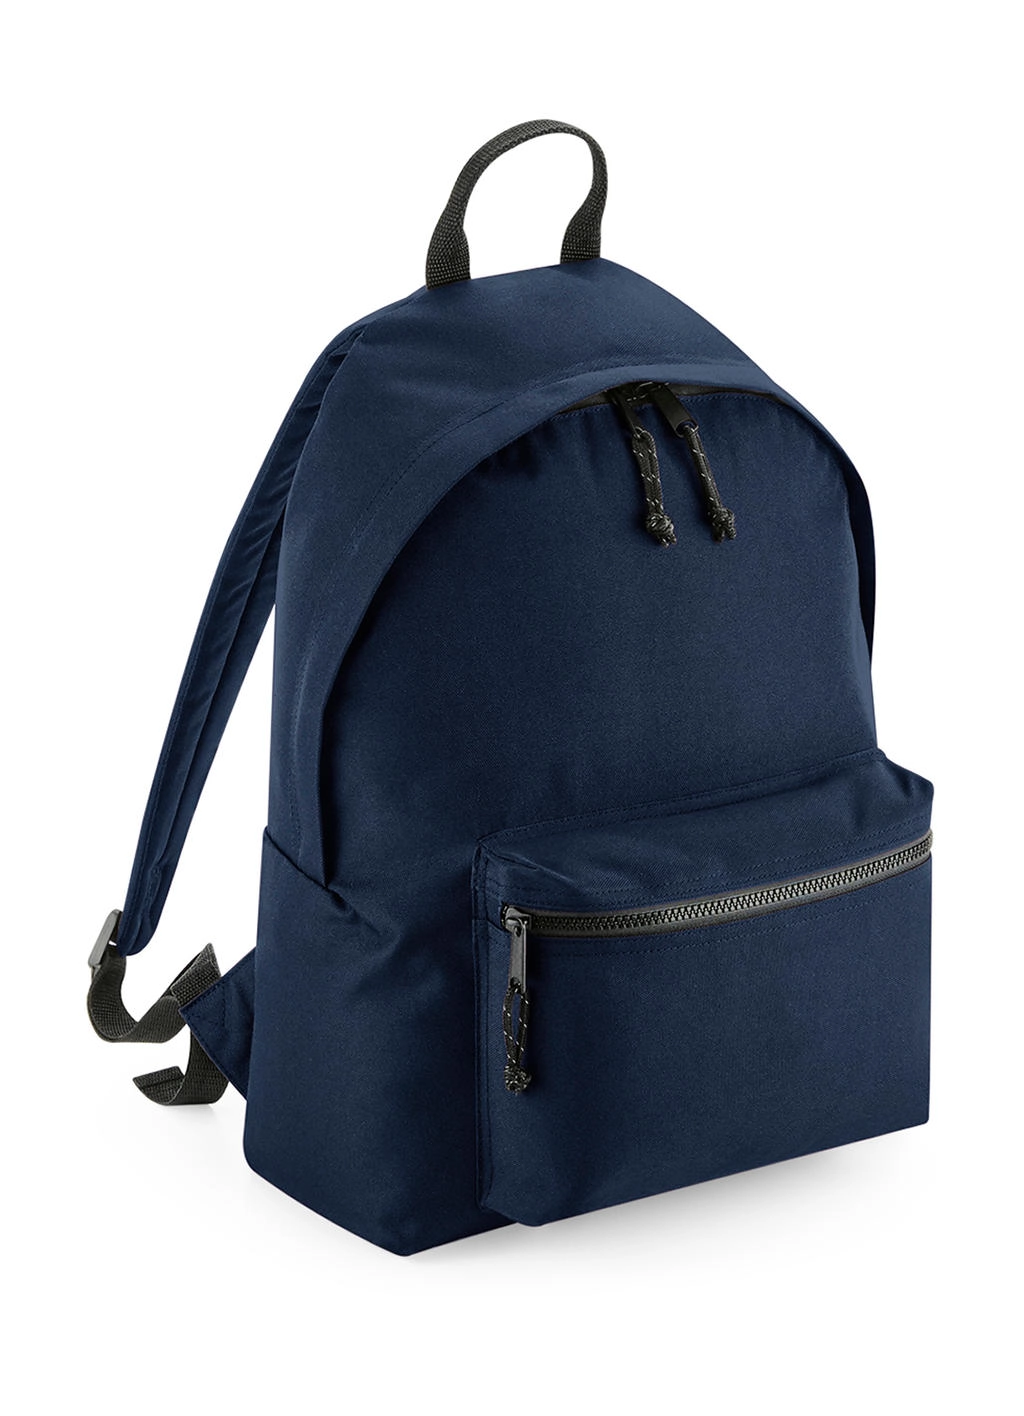 Recycled Backpack zum Besticken und Bedrucken in der Farbe Navy mit Ihren Logo, Schriftzug oder Motiv.